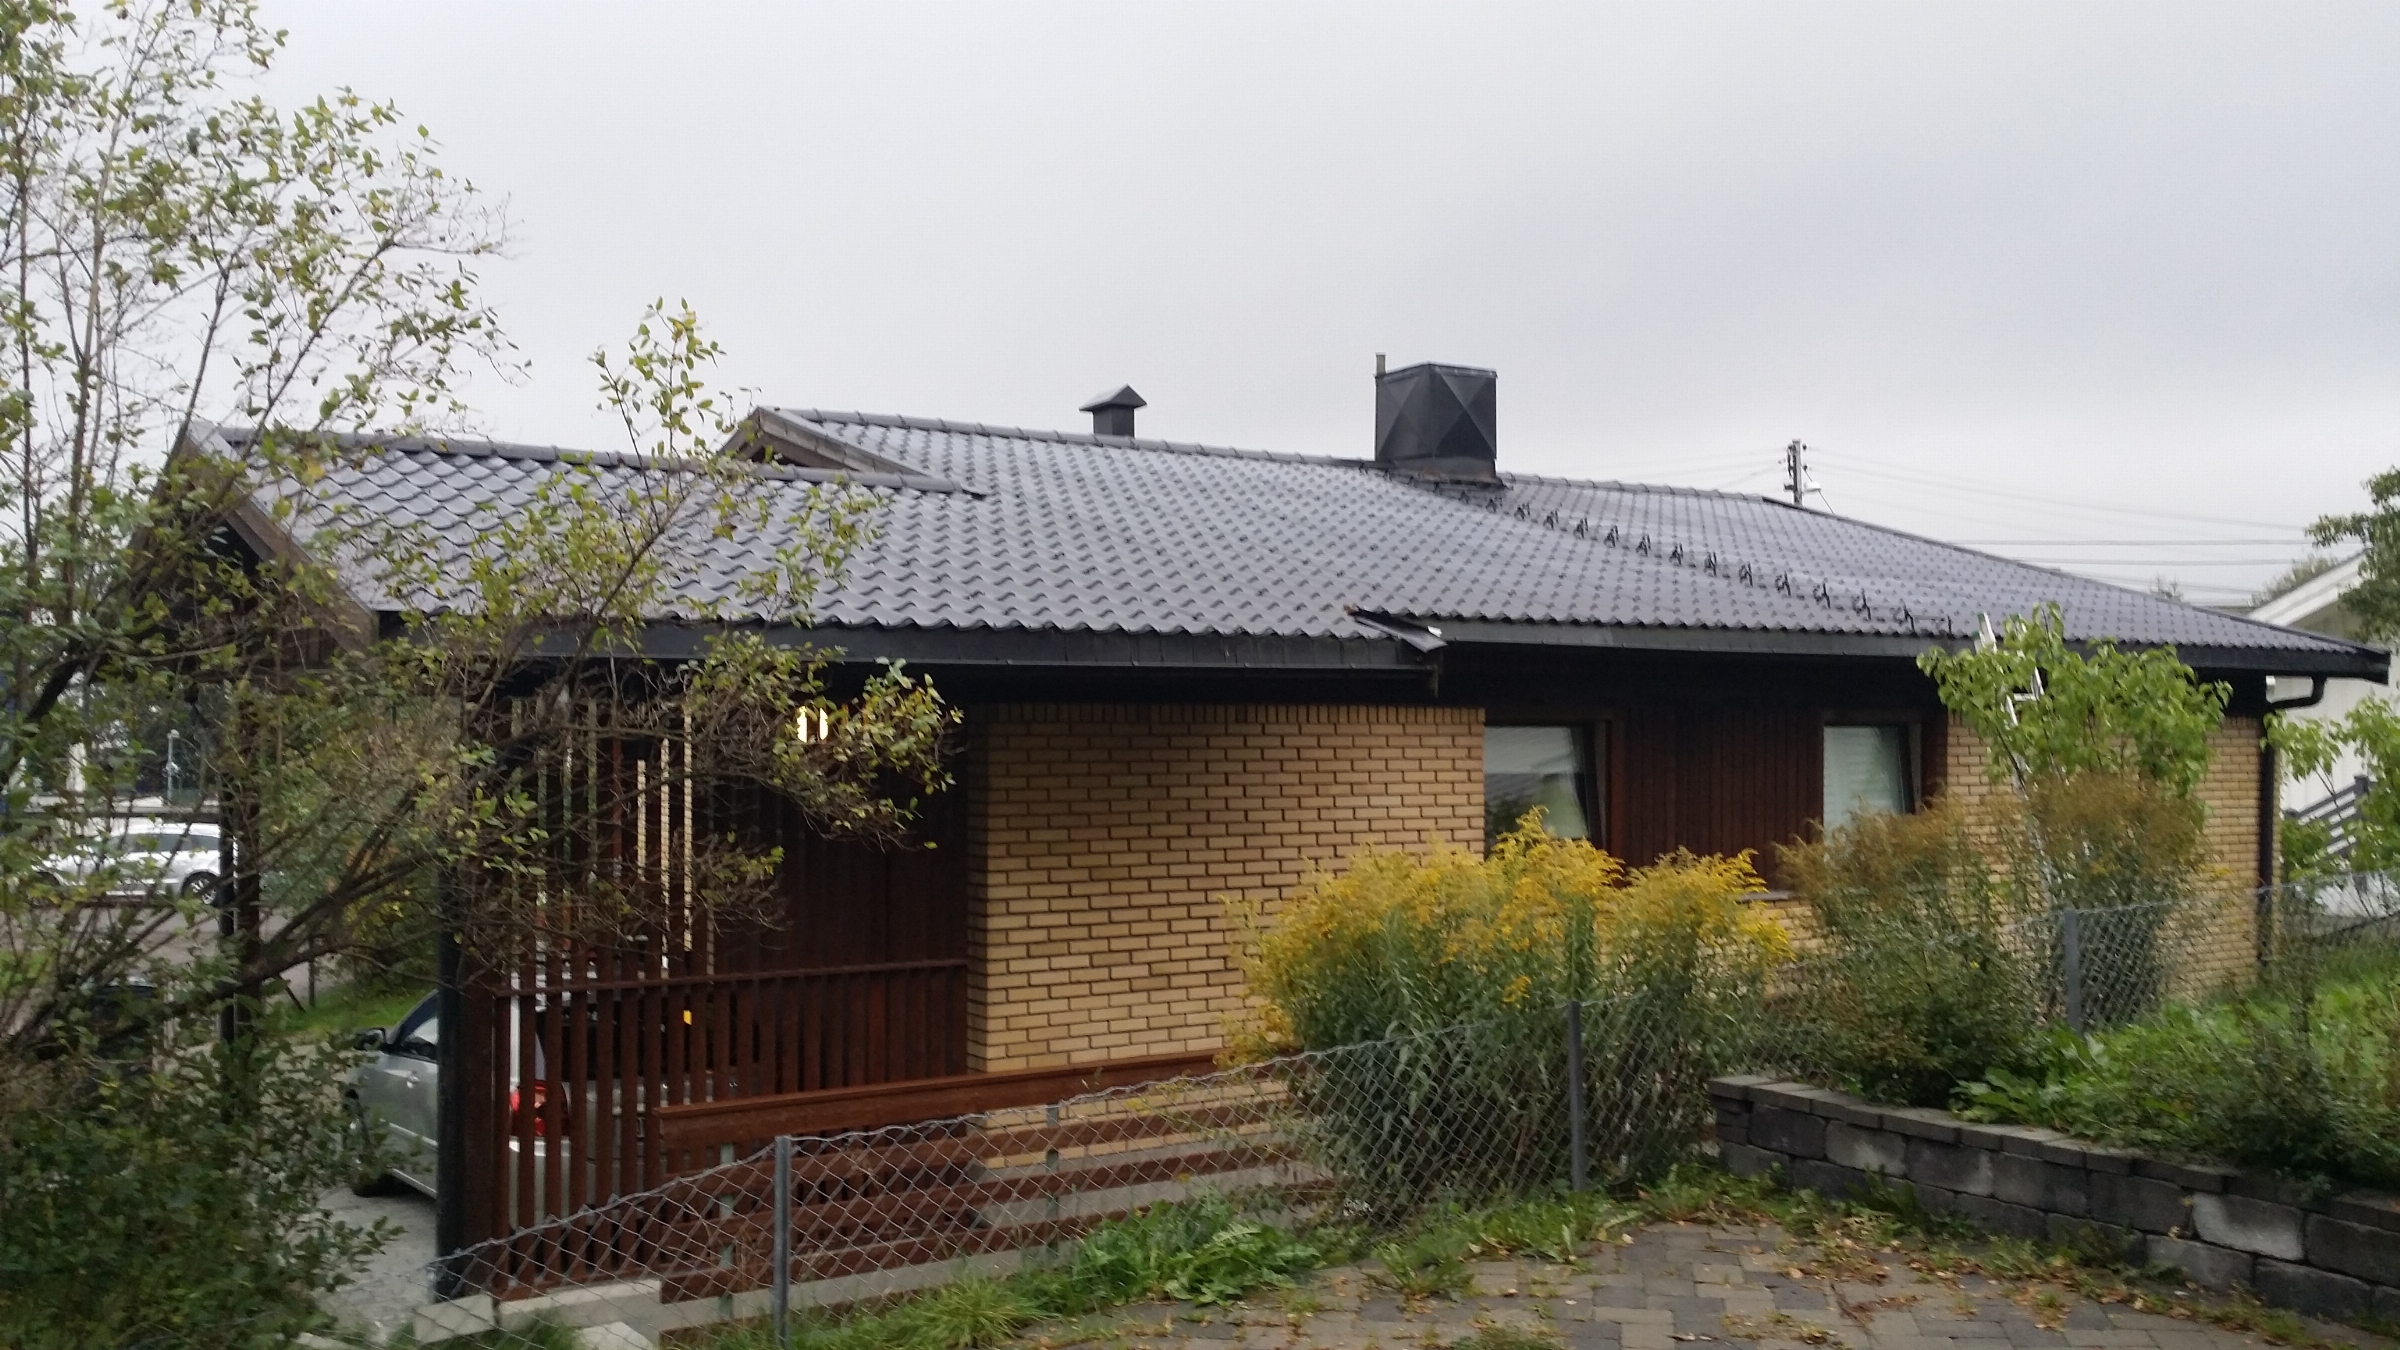 Omtekking av tak med integrerte solcellepaneler